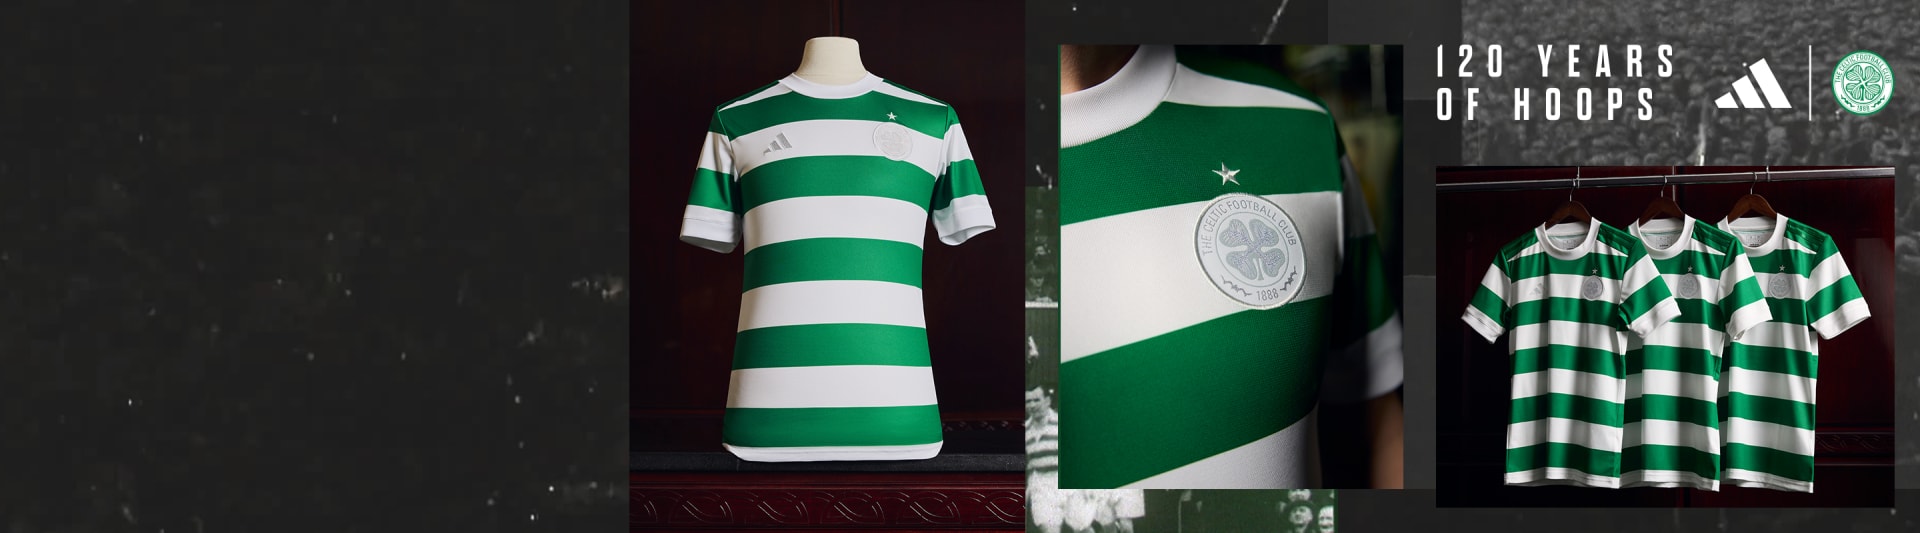 Celtic Junior 2021/22 Third Goalkeeper Shirt